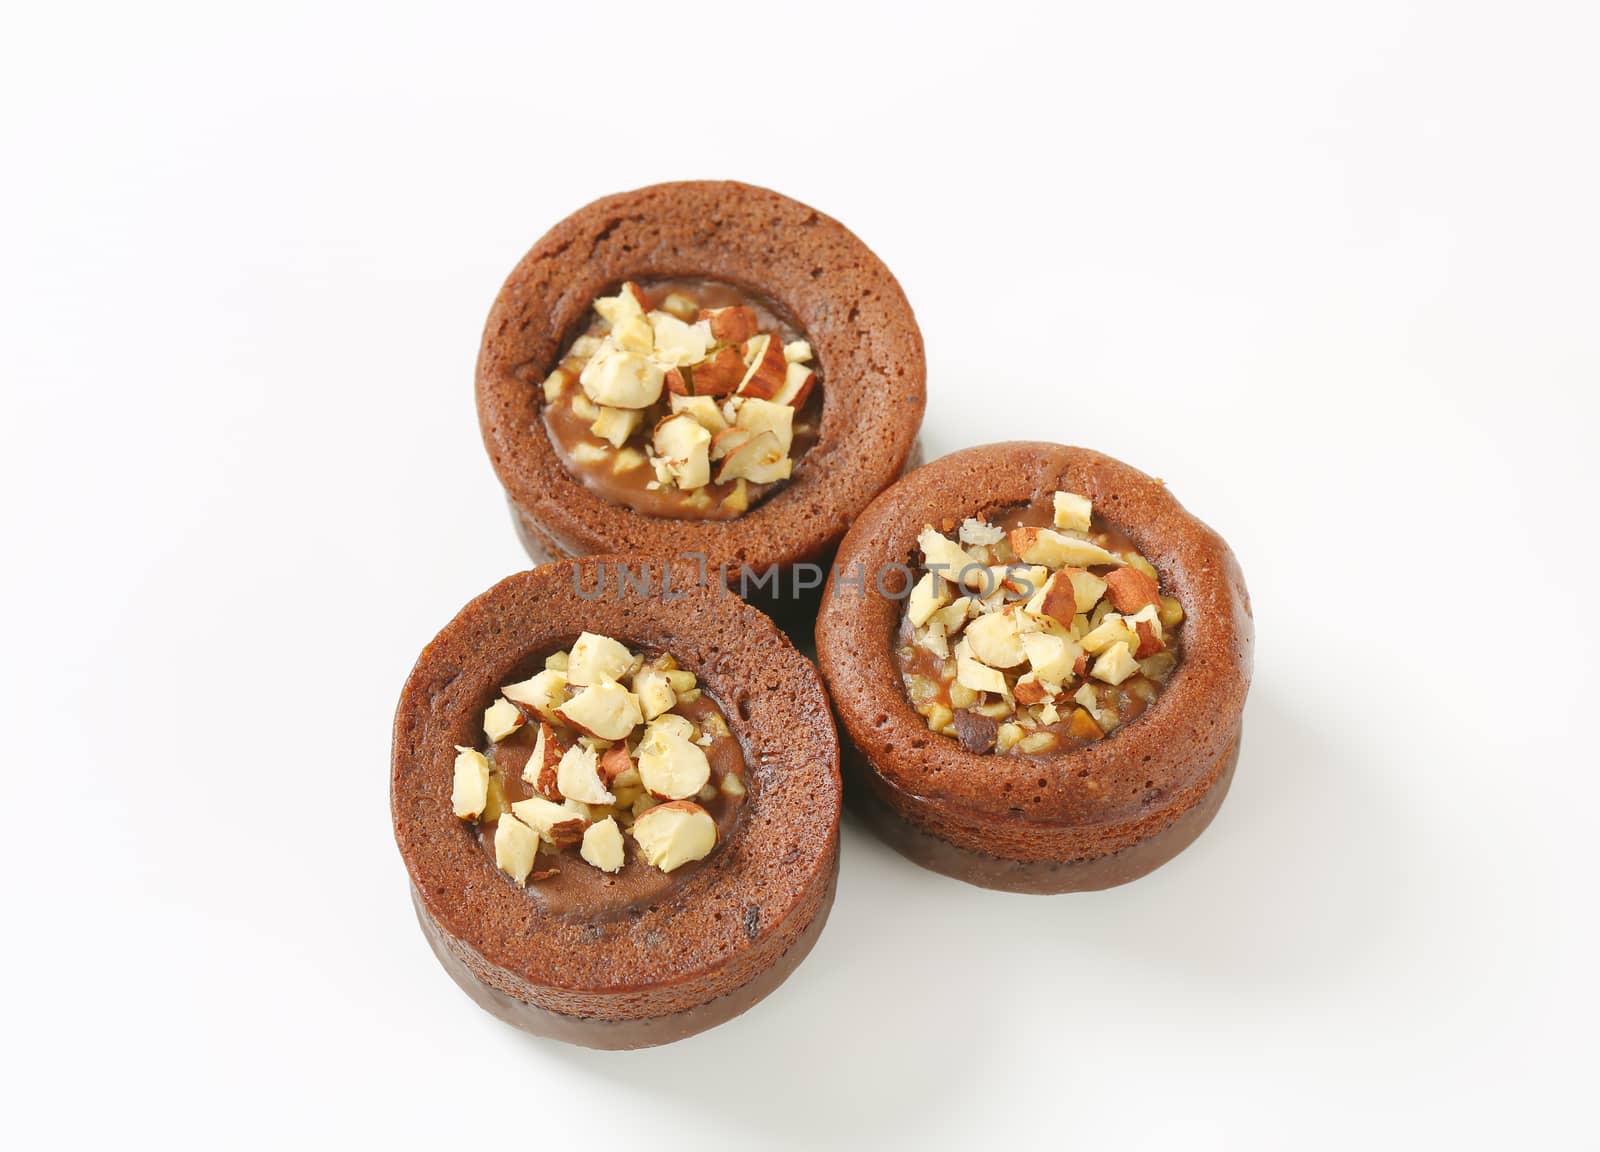 Mini chocolate hazelnut cakes by Digifoodstock